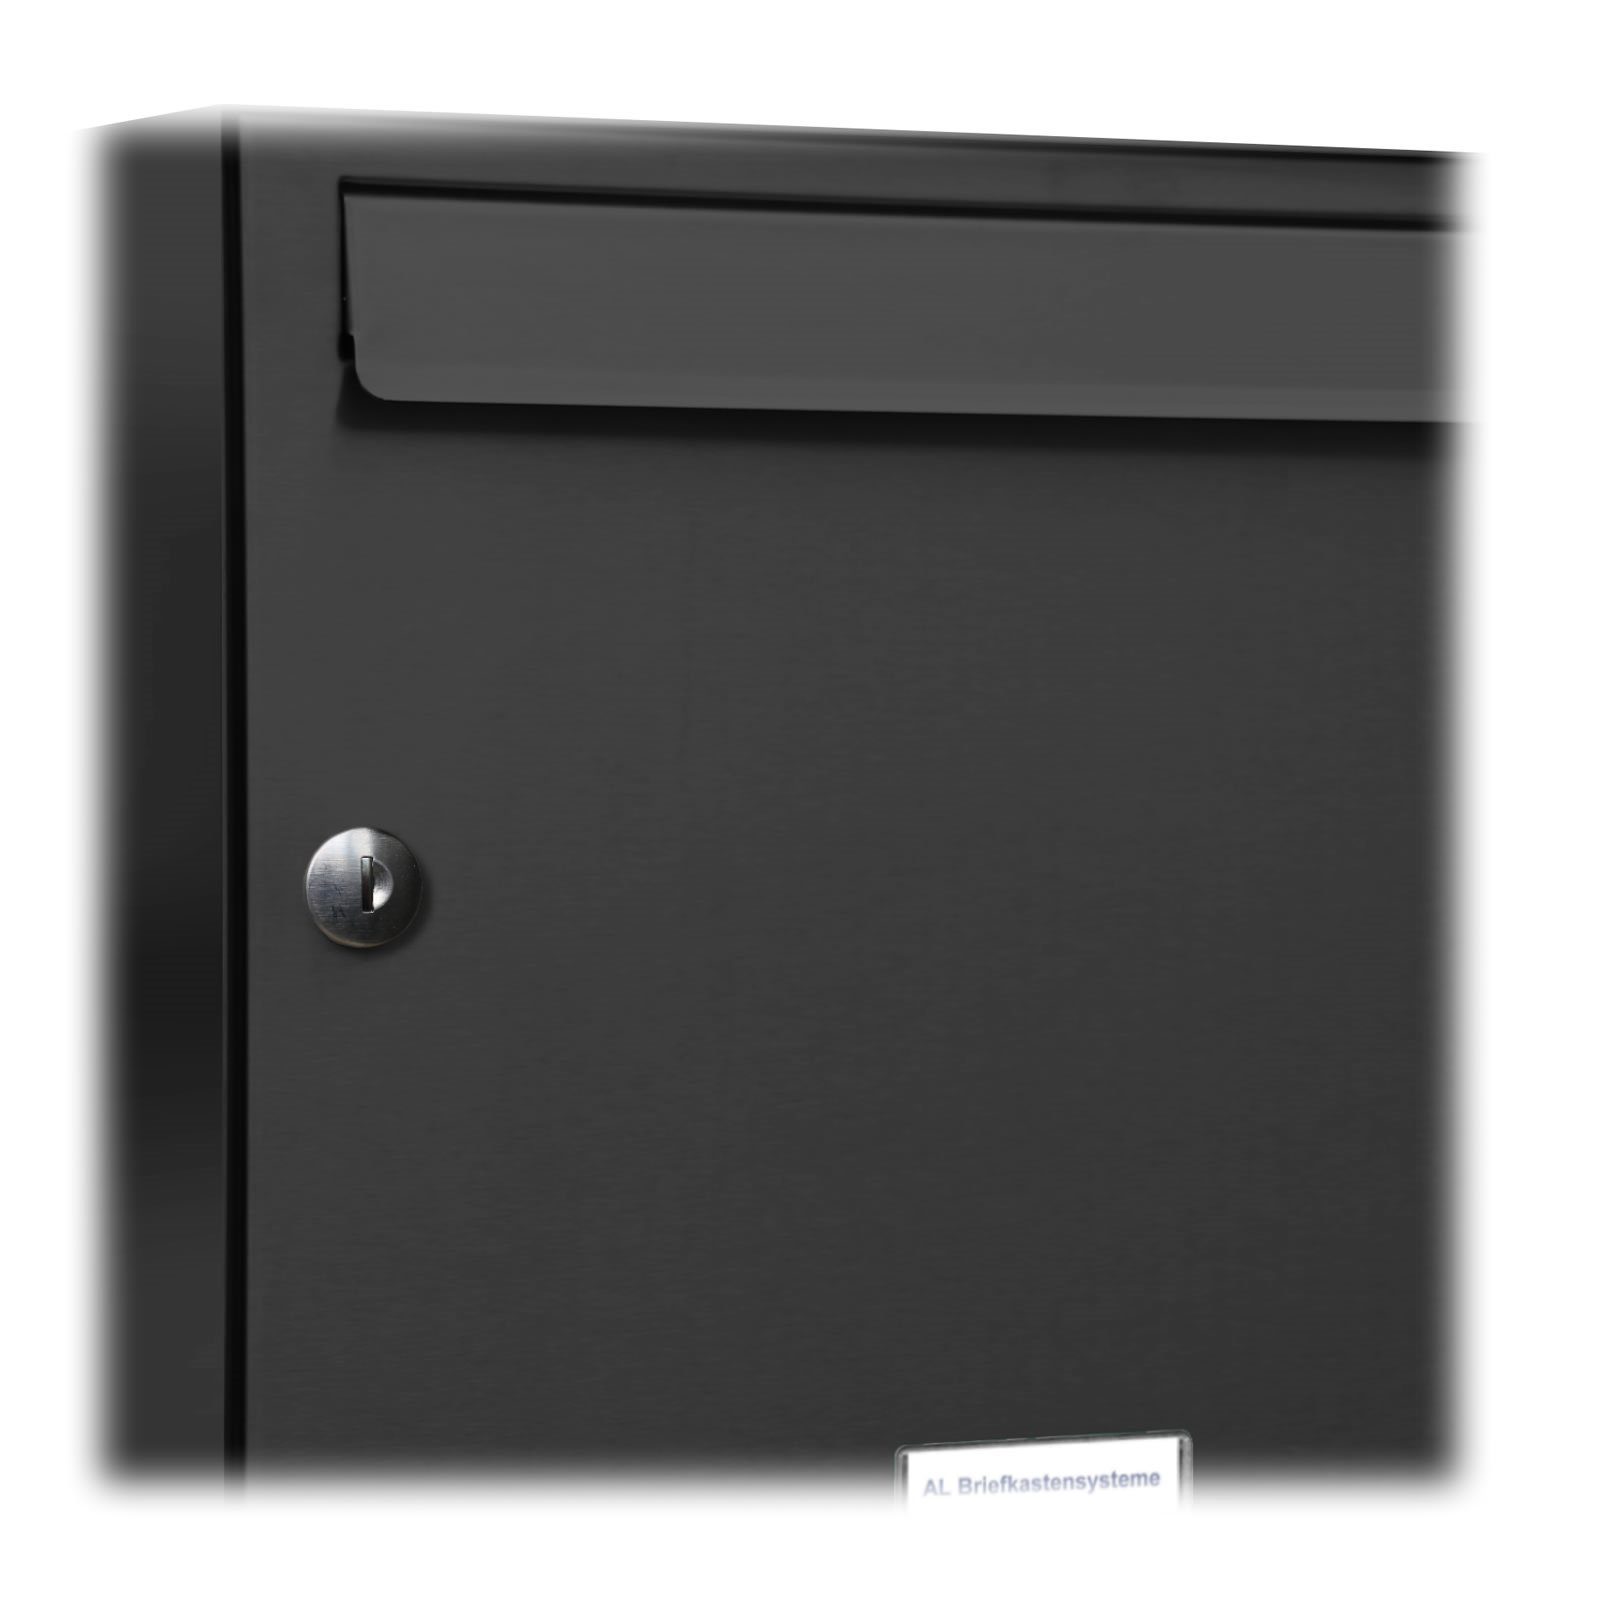 Briefkastensysteme Wandbriefkasten 3 AL Anthrazit Farbe Premium Klingel Briefkasten RAL 2er 1x2S Außen 7016